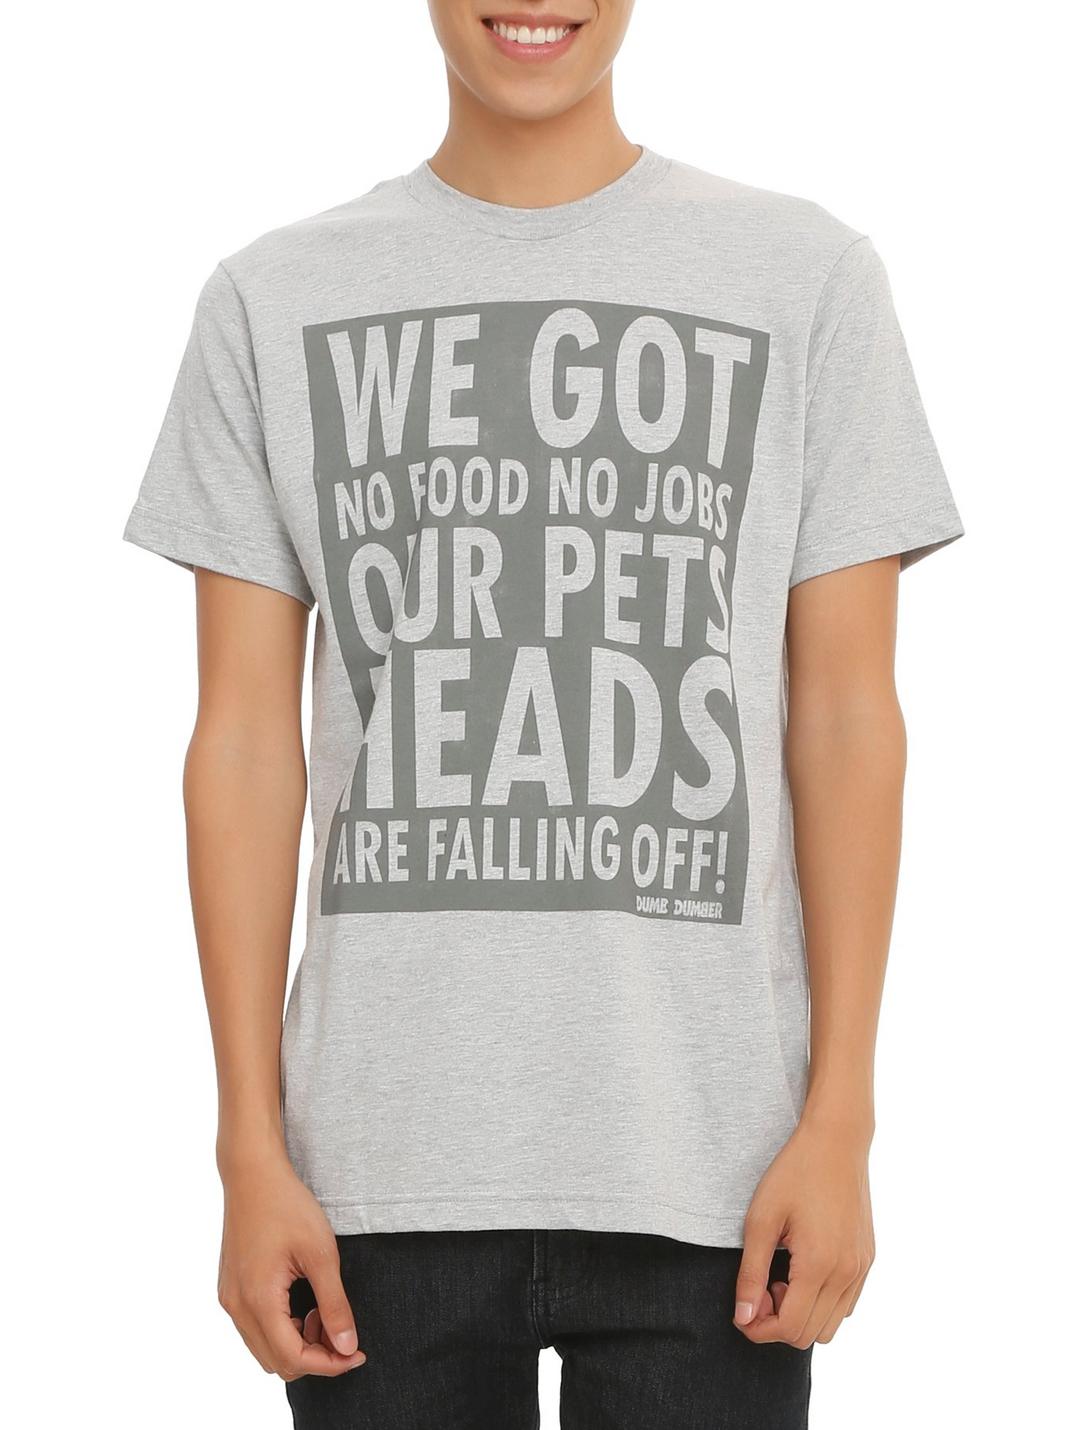 Dumb & Dumber Pets Heads T-Shirt, BLACK, hi-res